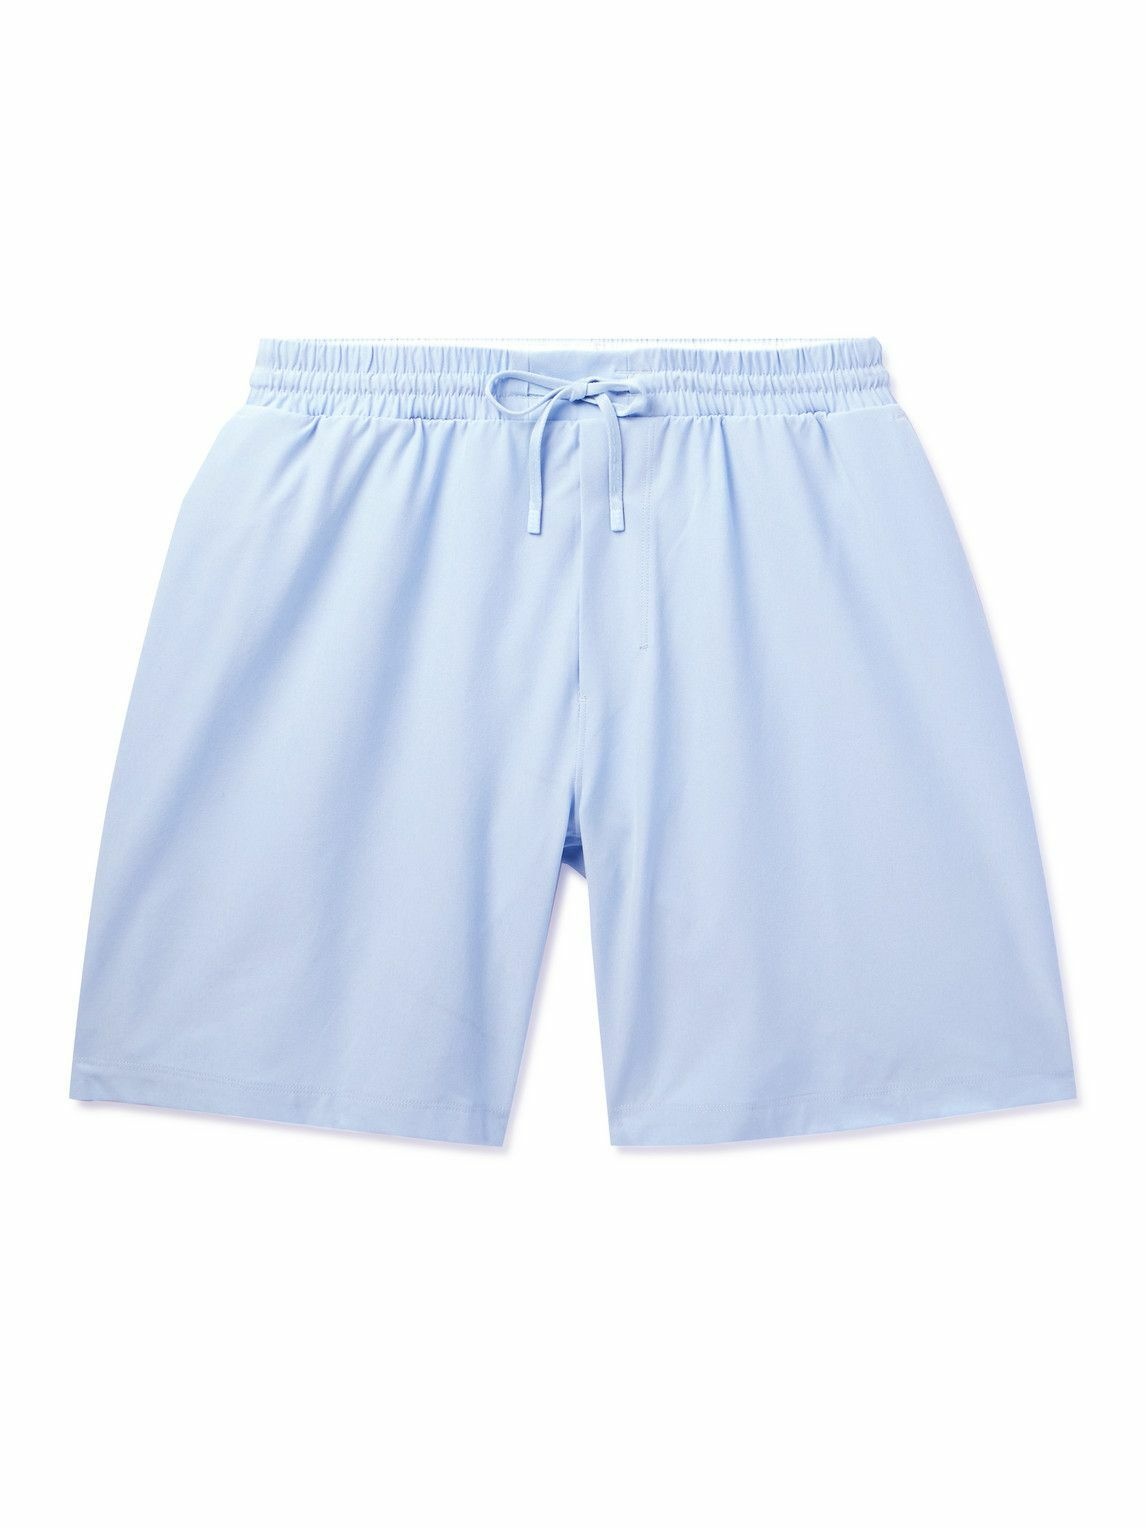 Lululemon - Straight-Leg Mid-Length Recycled Swim Shorts - Blue Lululemon